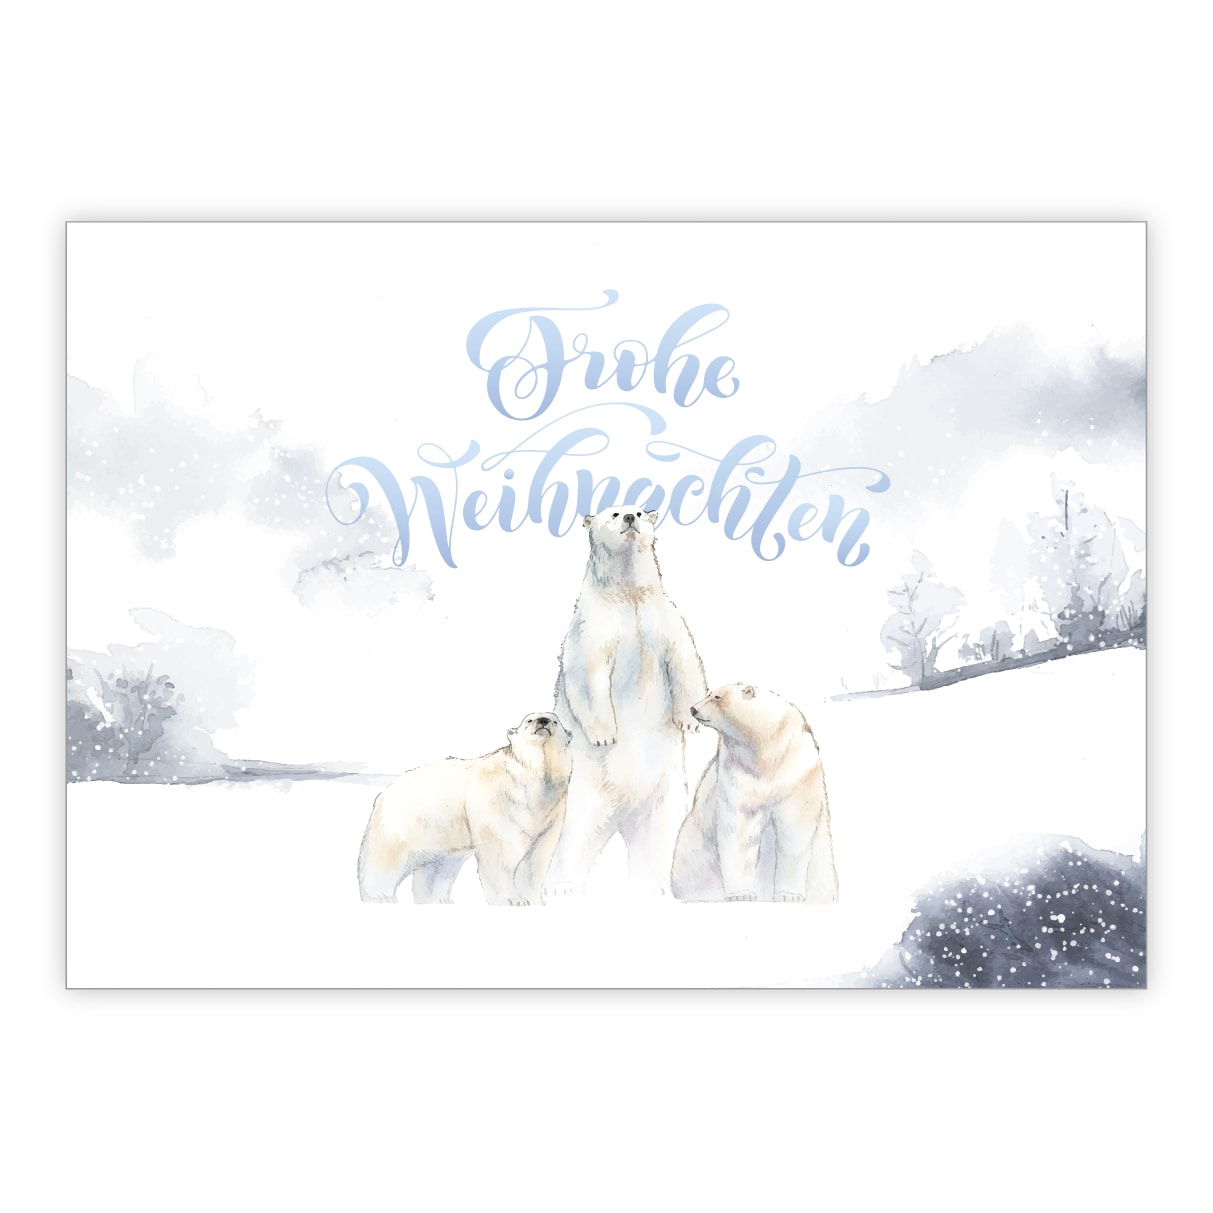 Süße Winter Weihnachtskarte mit Eisbären in Schnee Landschaft